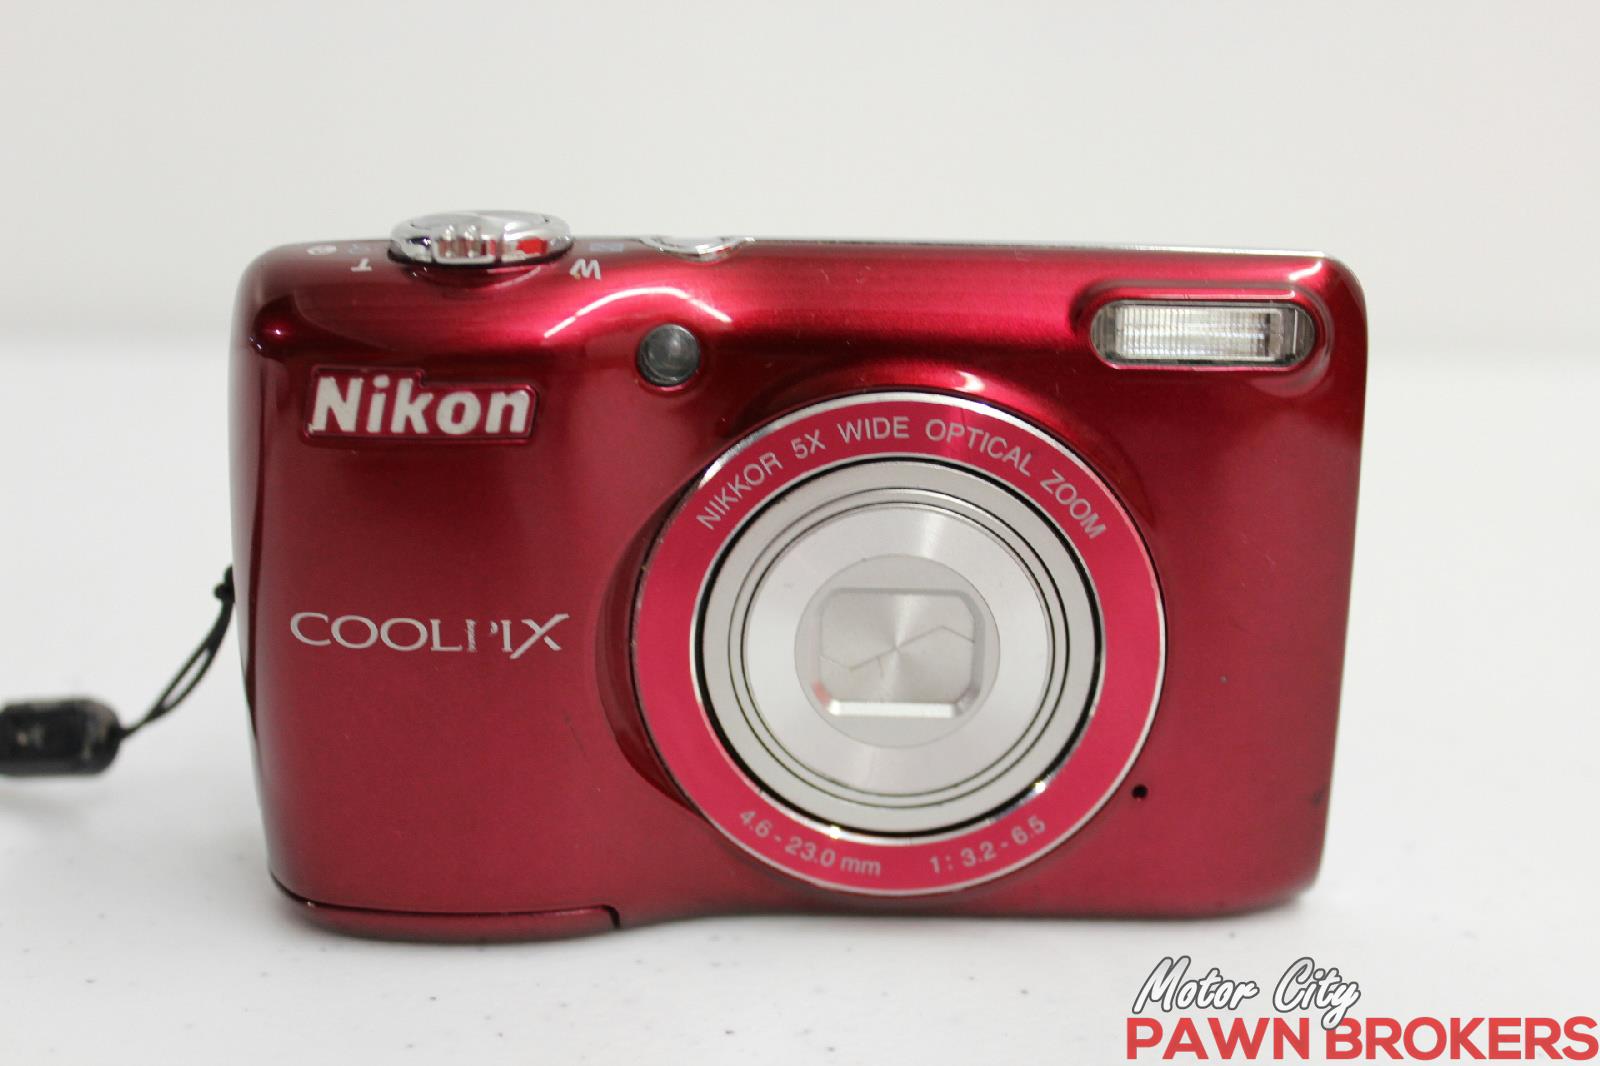 Nikon COOLPIX L26 16.1MP Digital Camera - Red for sale online | eBay